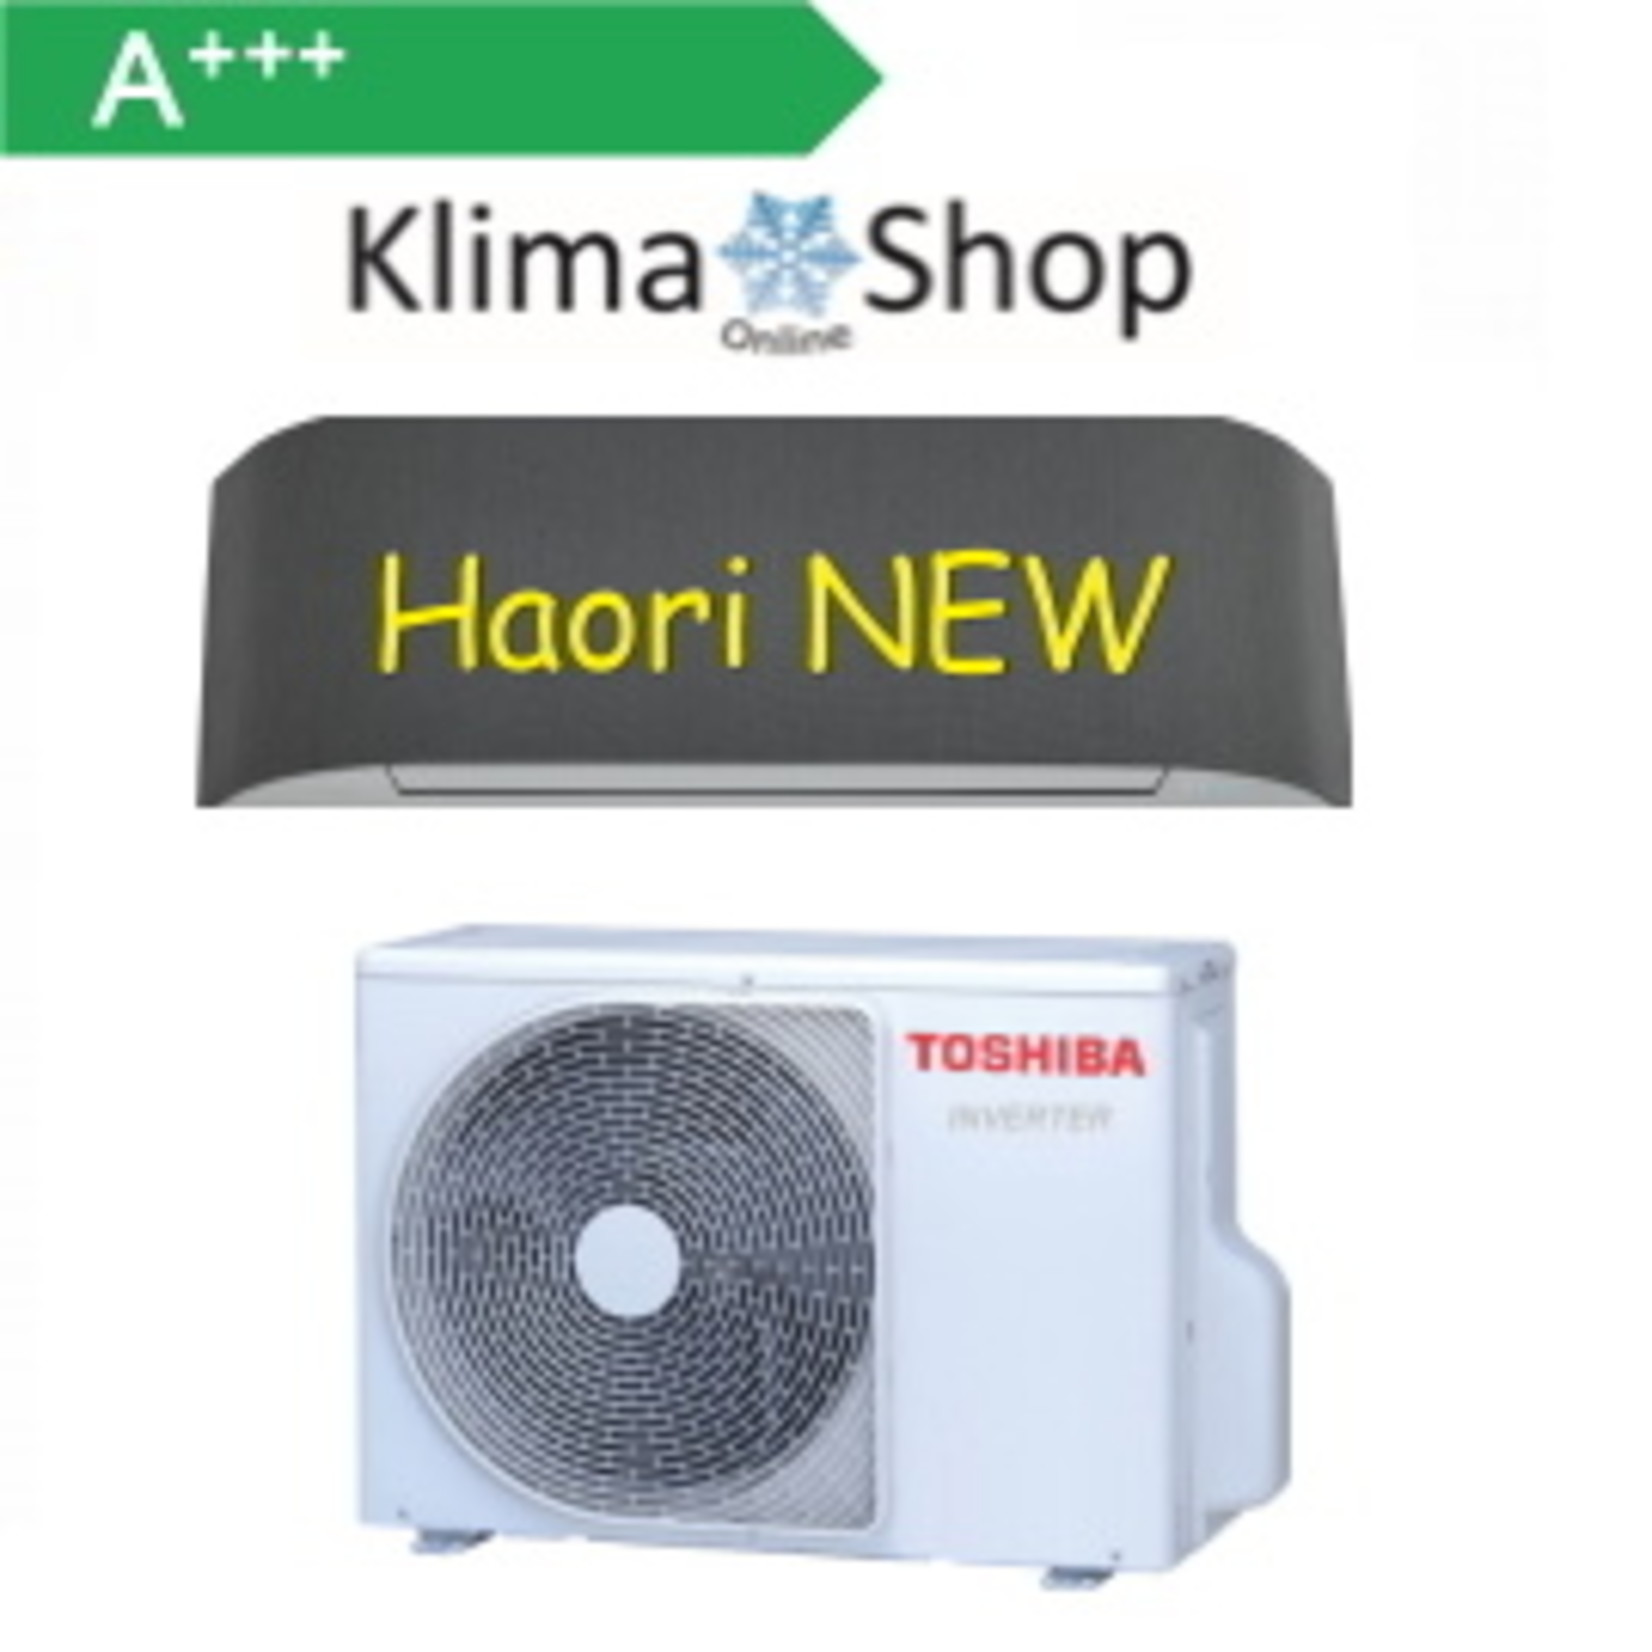 Toshiba Set mit Haori 3,5 kW Wandgerät   -neu